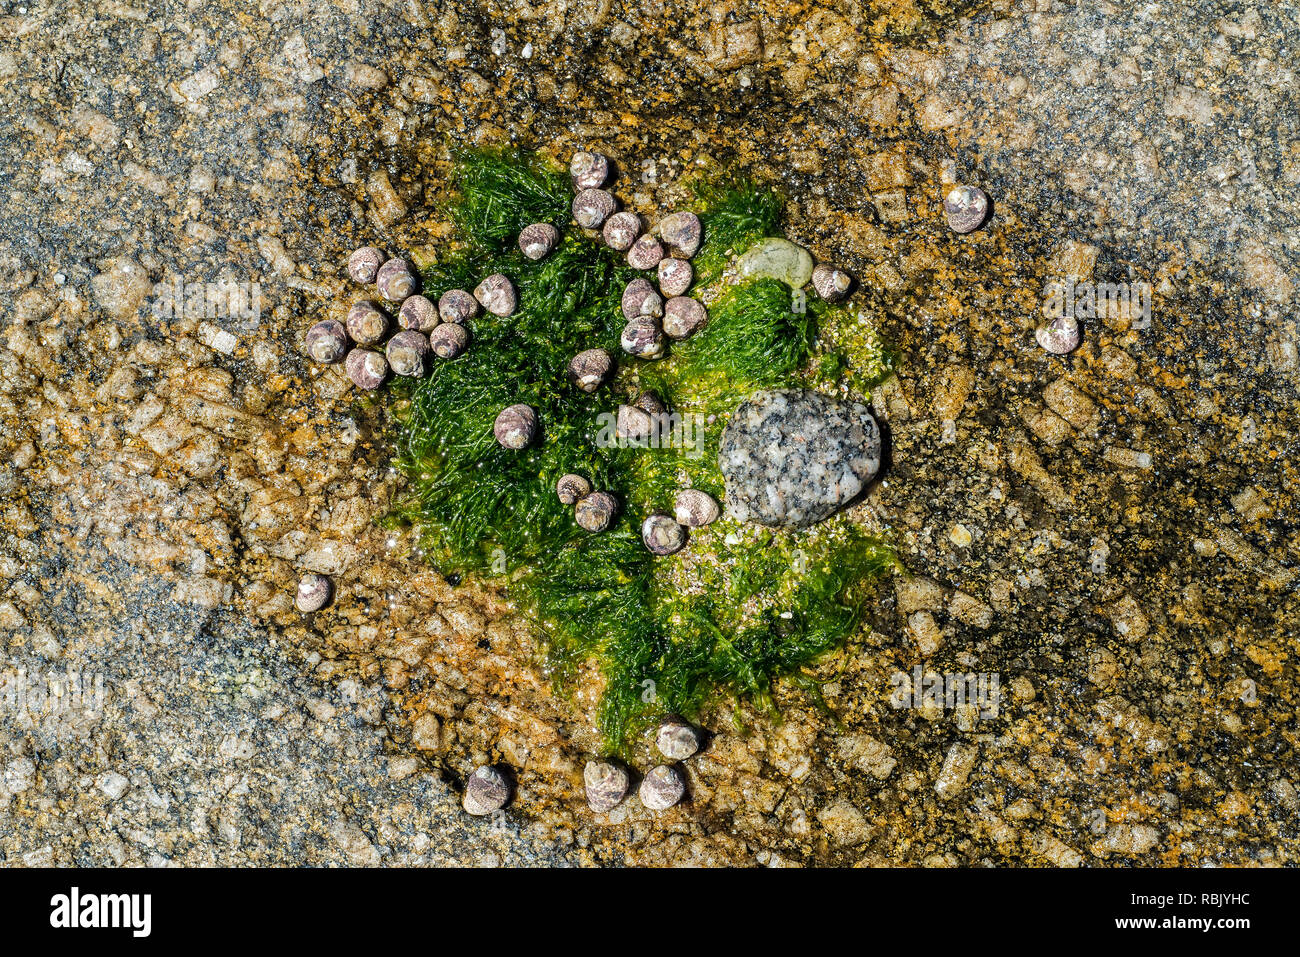 Rivestito di gusci superiore (Phorcus lineatus / Osilinus lineatus) e alghe marine in essiccato fino rock piscina sulla spiaggia rocciosa Foto Stock